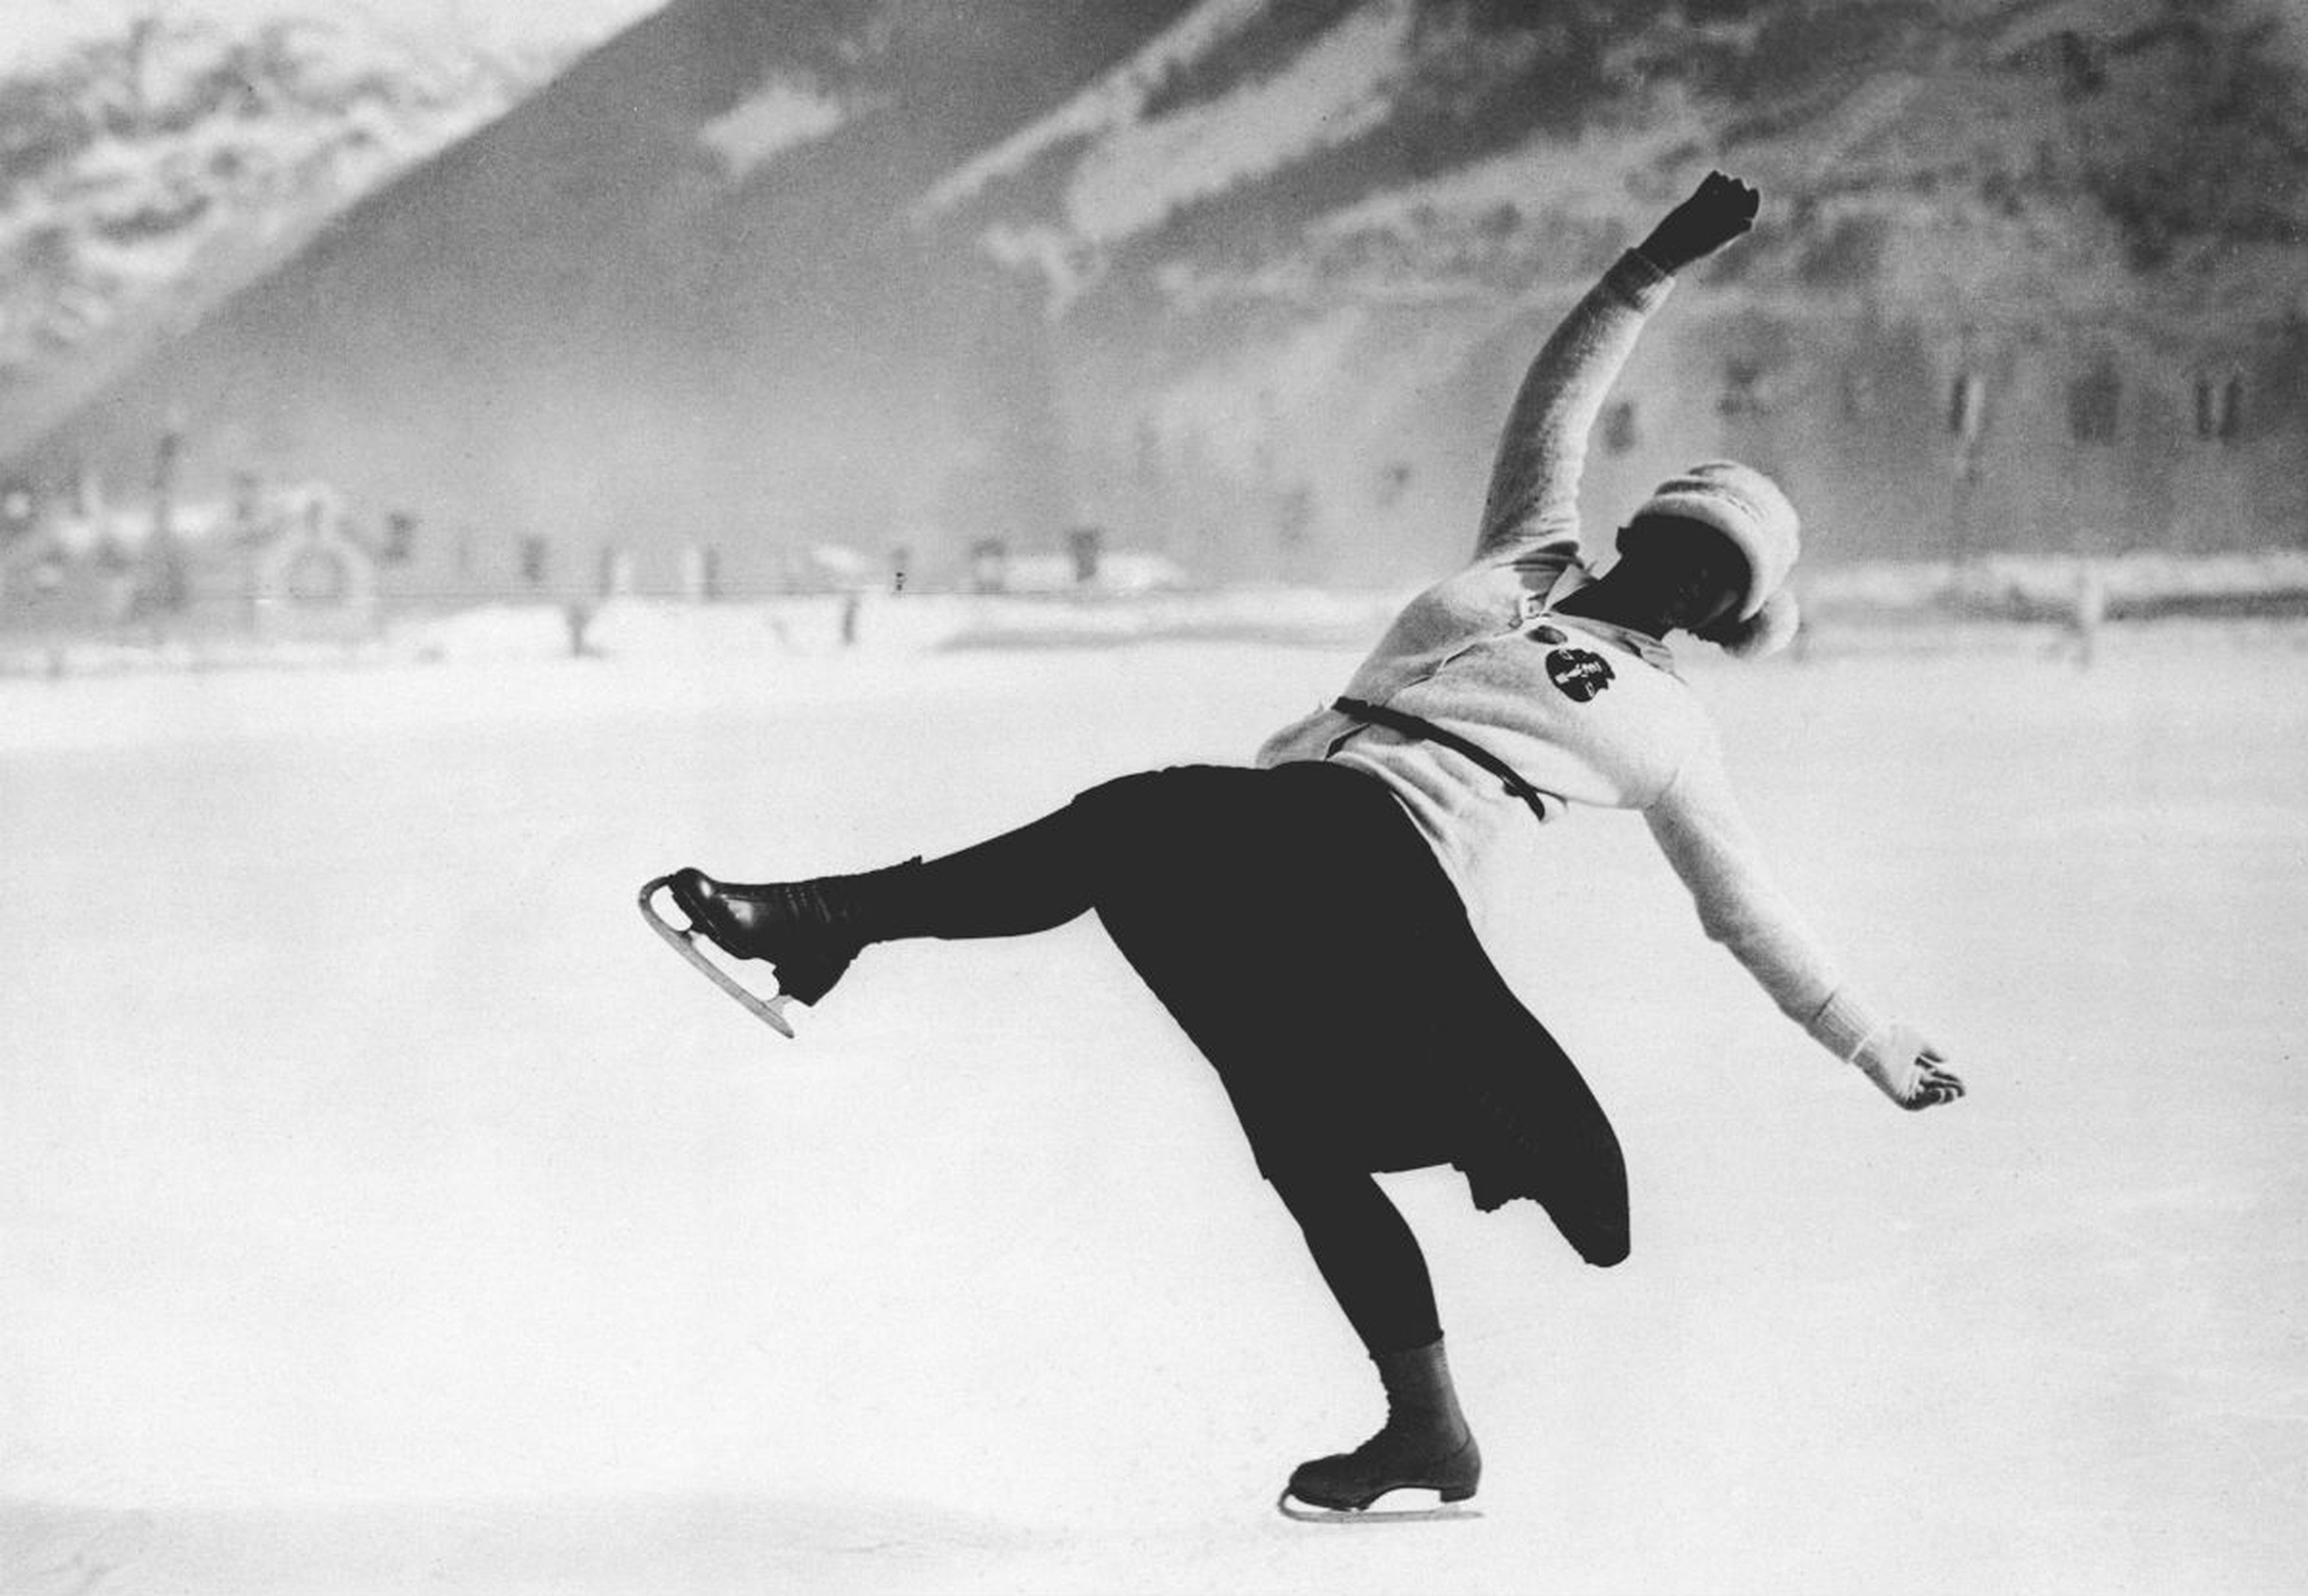 La atleta austriaca Herma Planck-Szabo compitiendo por el oro en patinaje artístico femenino en los Juegos Olímpicos de Invierno de Chamonix 1924.